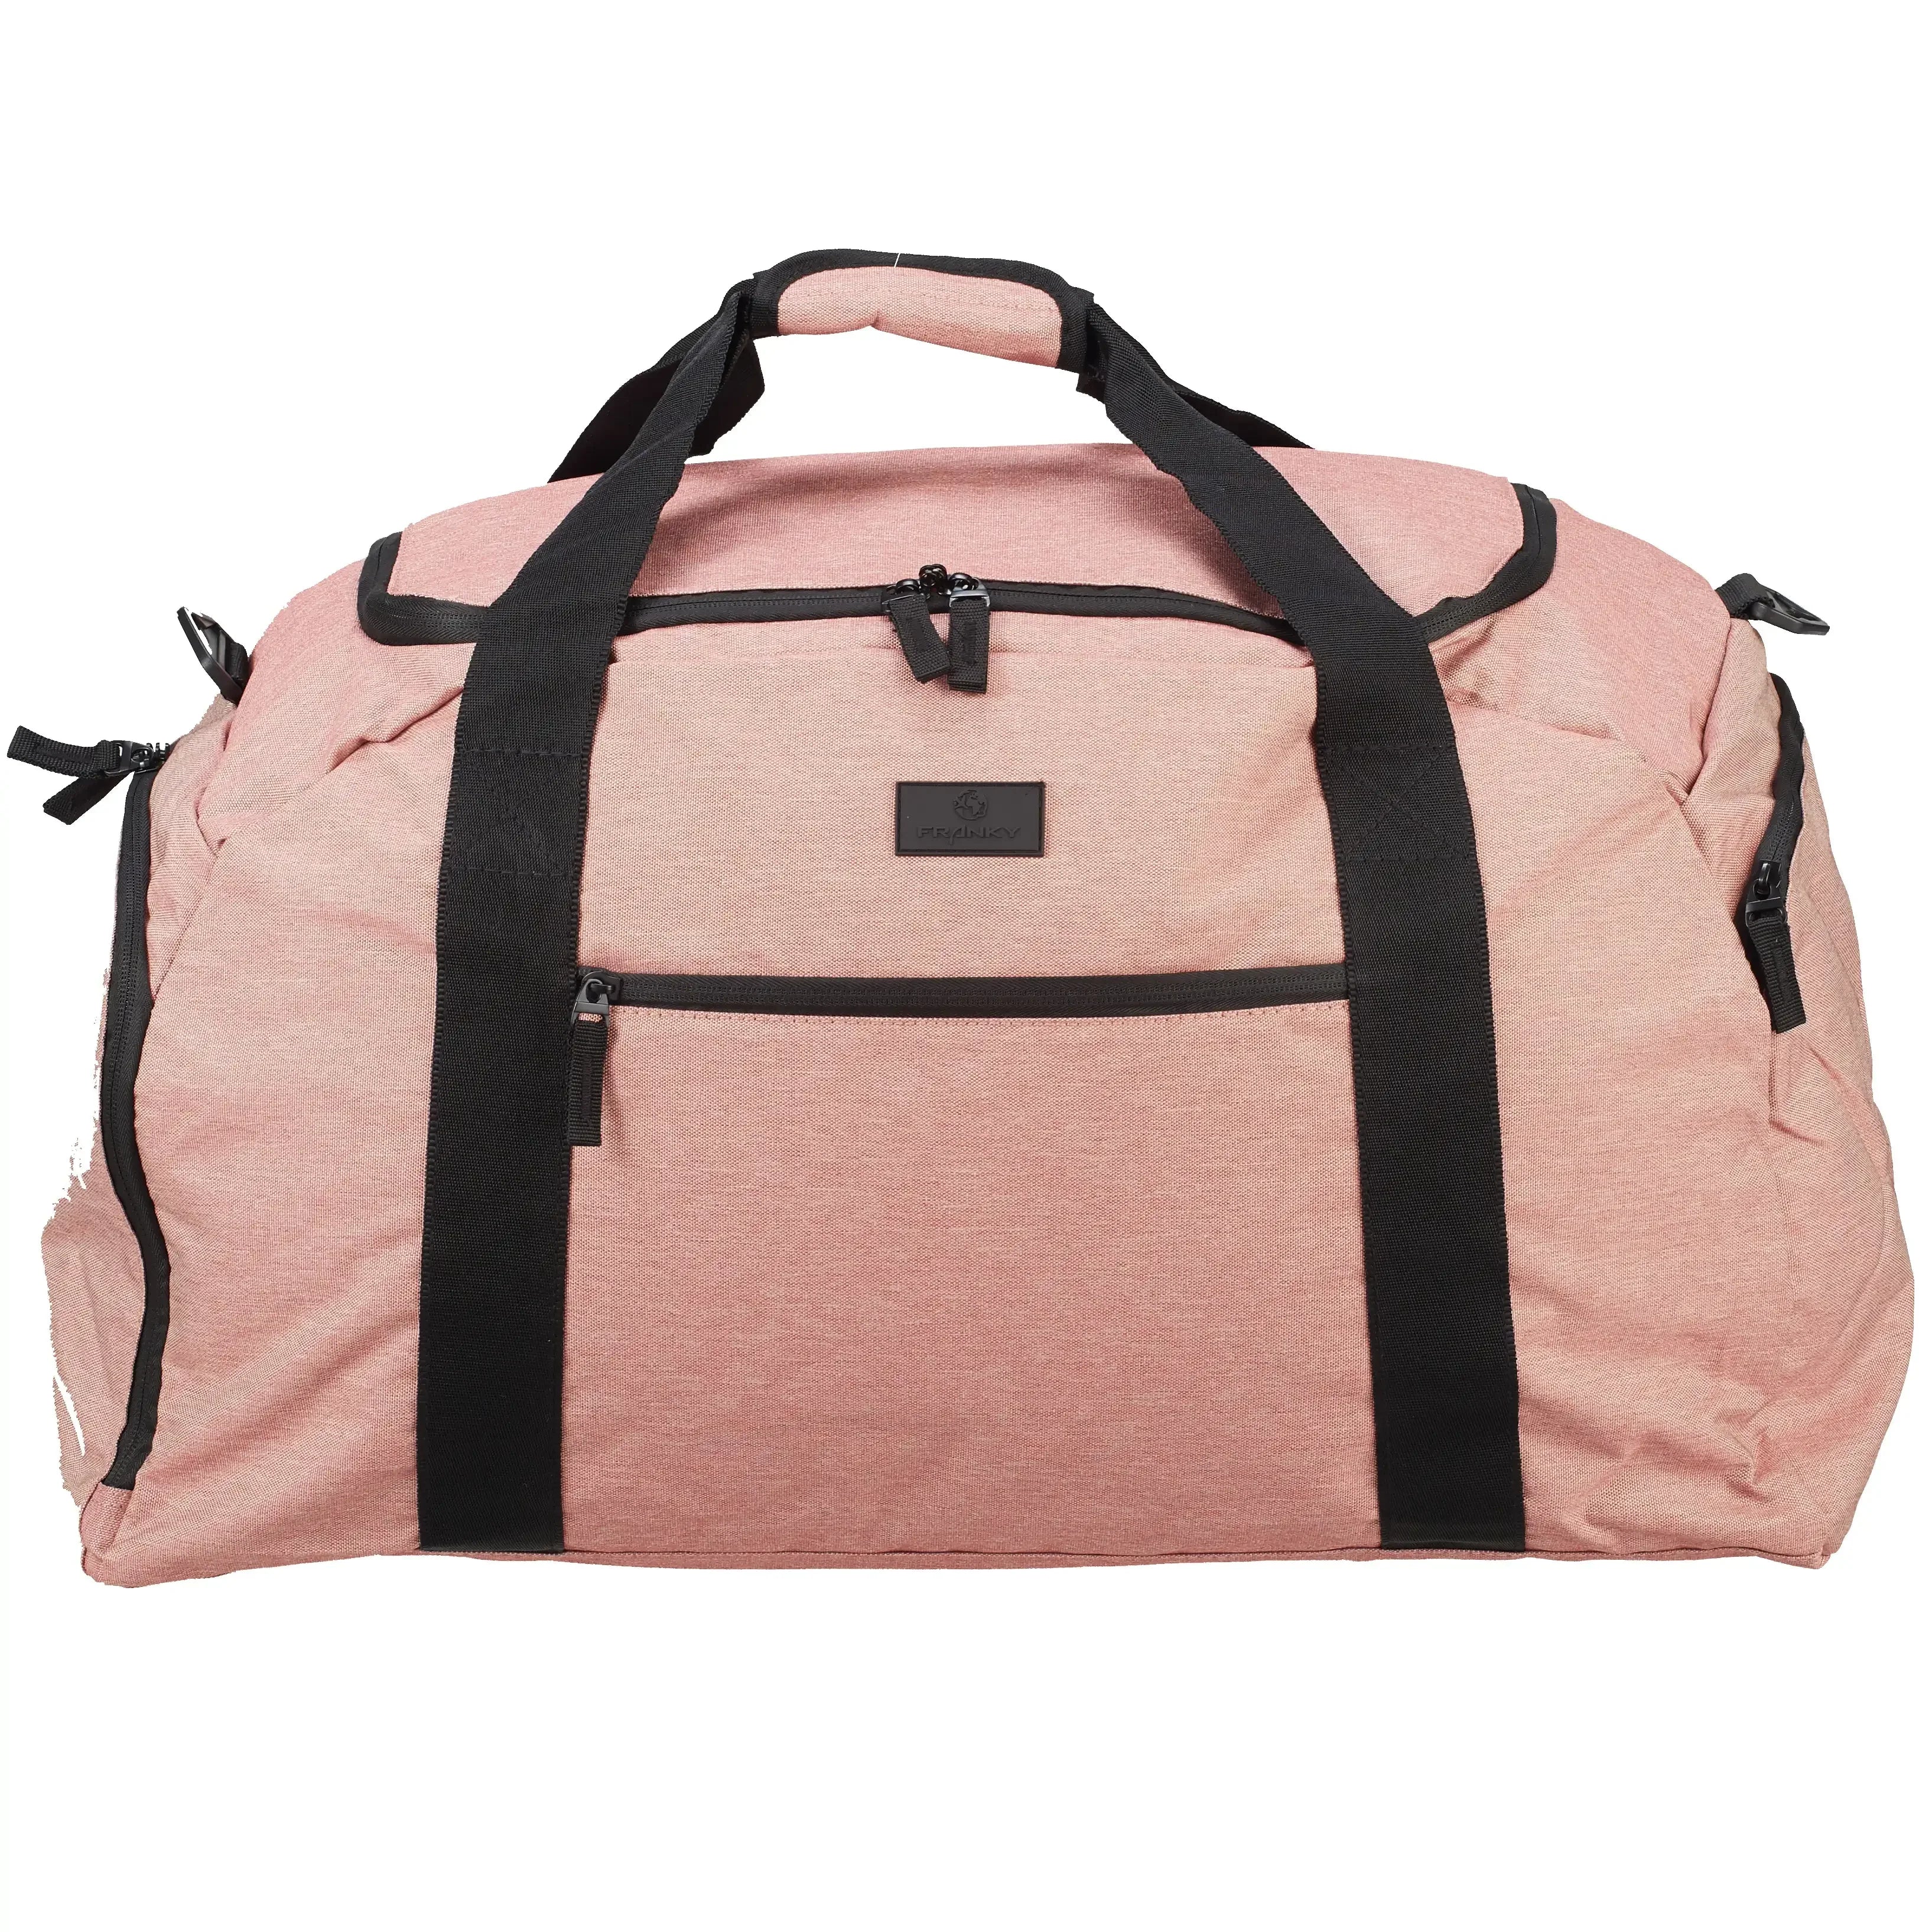 koffer-direkt.de Travel bag M 50 cm - rose